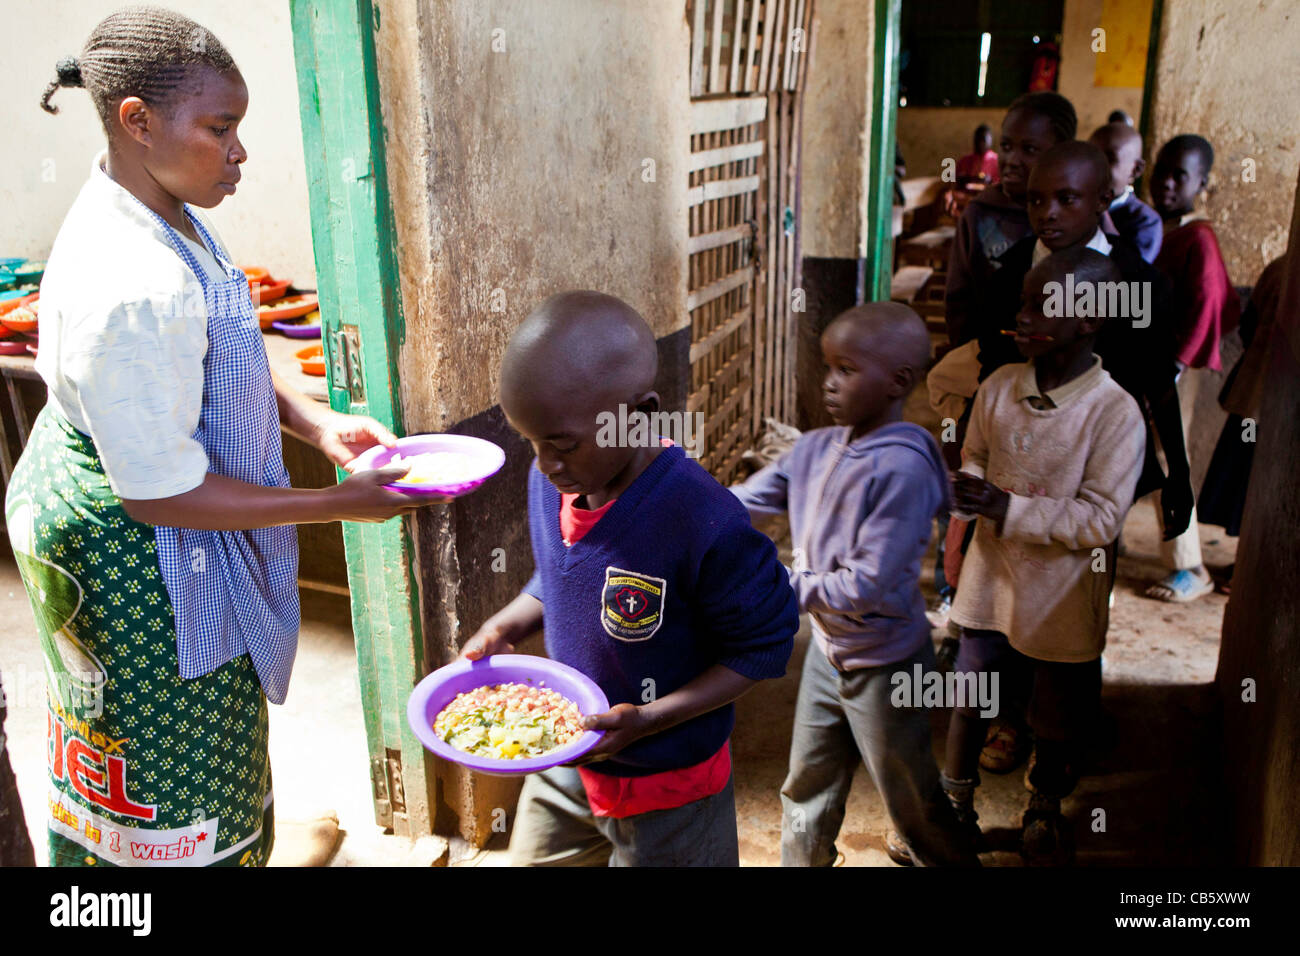 Les enfants de l'école recevoir la nourriture fraîchement cuit à Kibera, Nairobi école où une ONG exécute un programme d'alimentation à l'heure du déjeuner. Banque D'Images